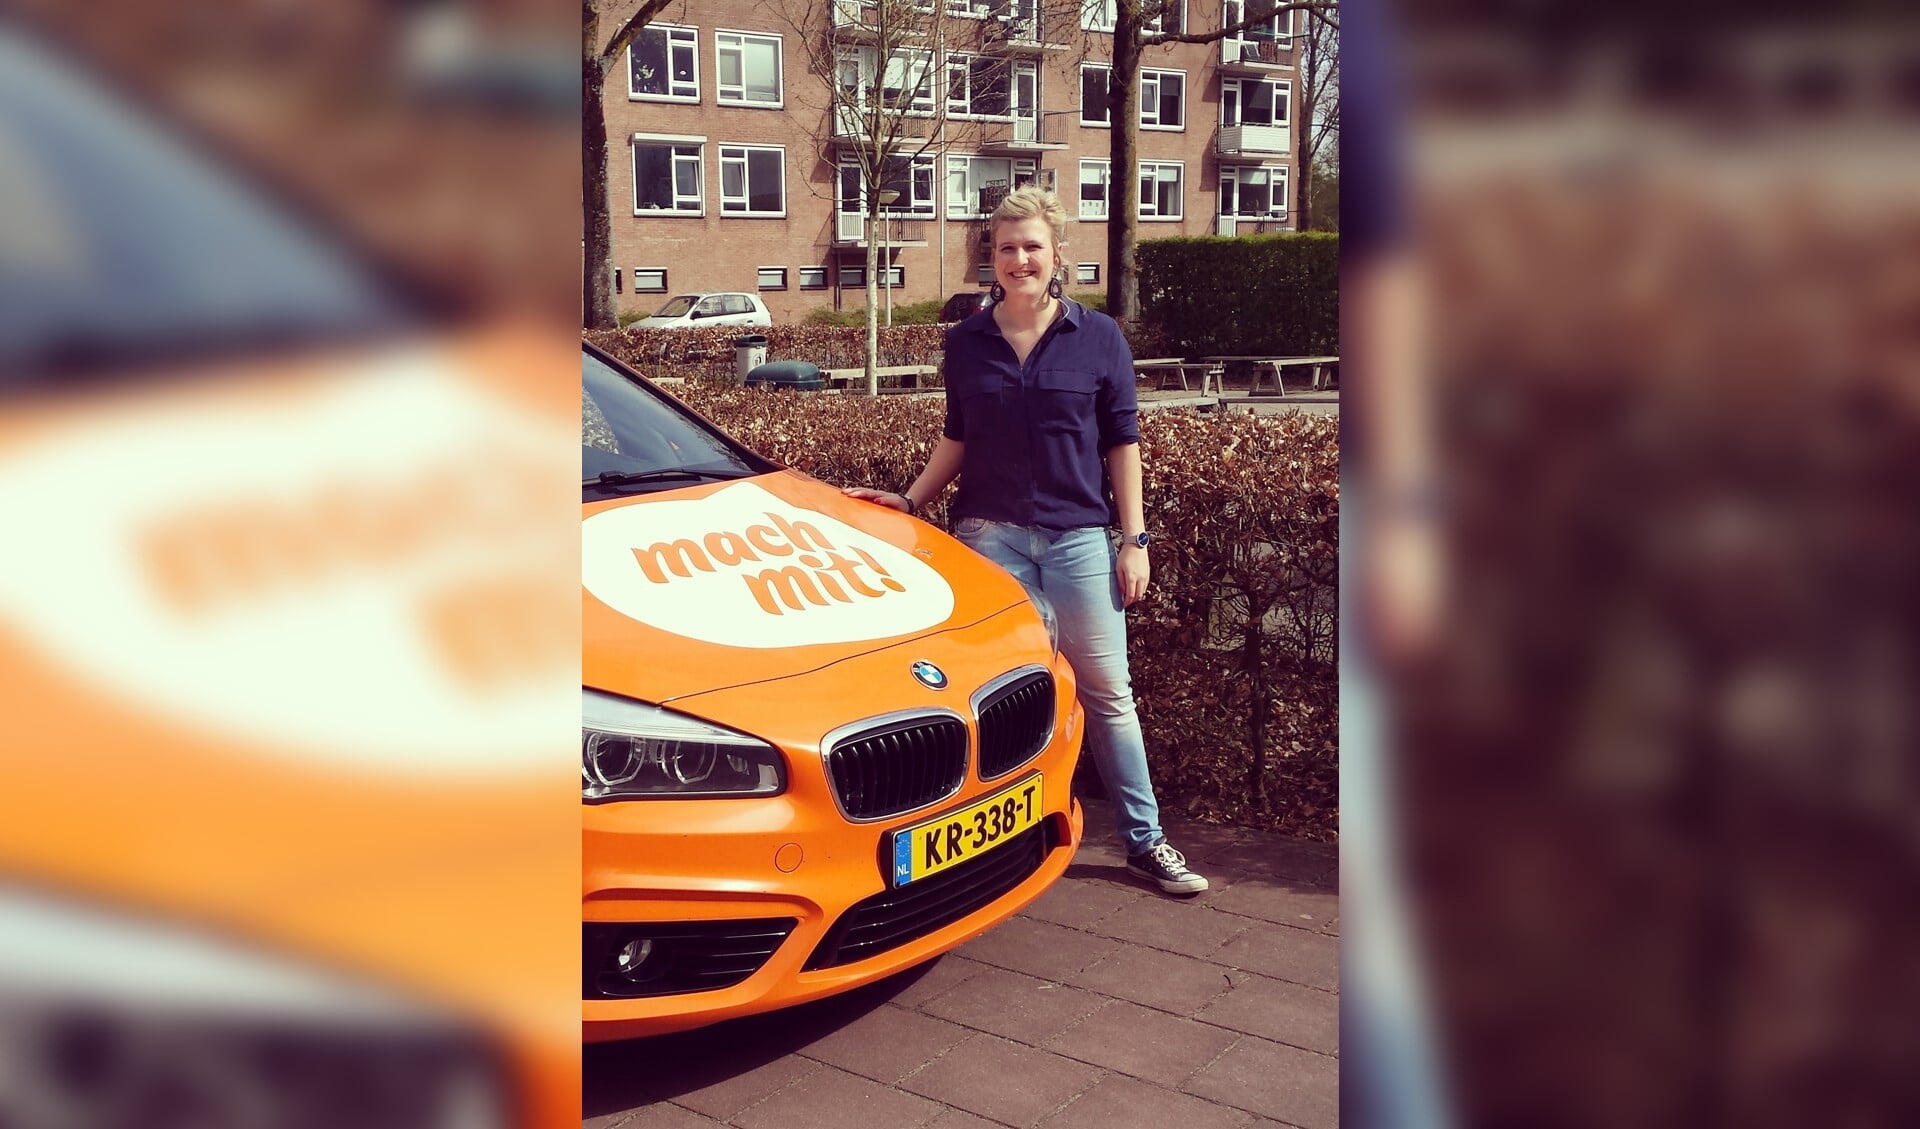 Willeke Voskamp is genomineerd voor deze nieuwe verkiezing van 'Mach mit!'. Foto: PR